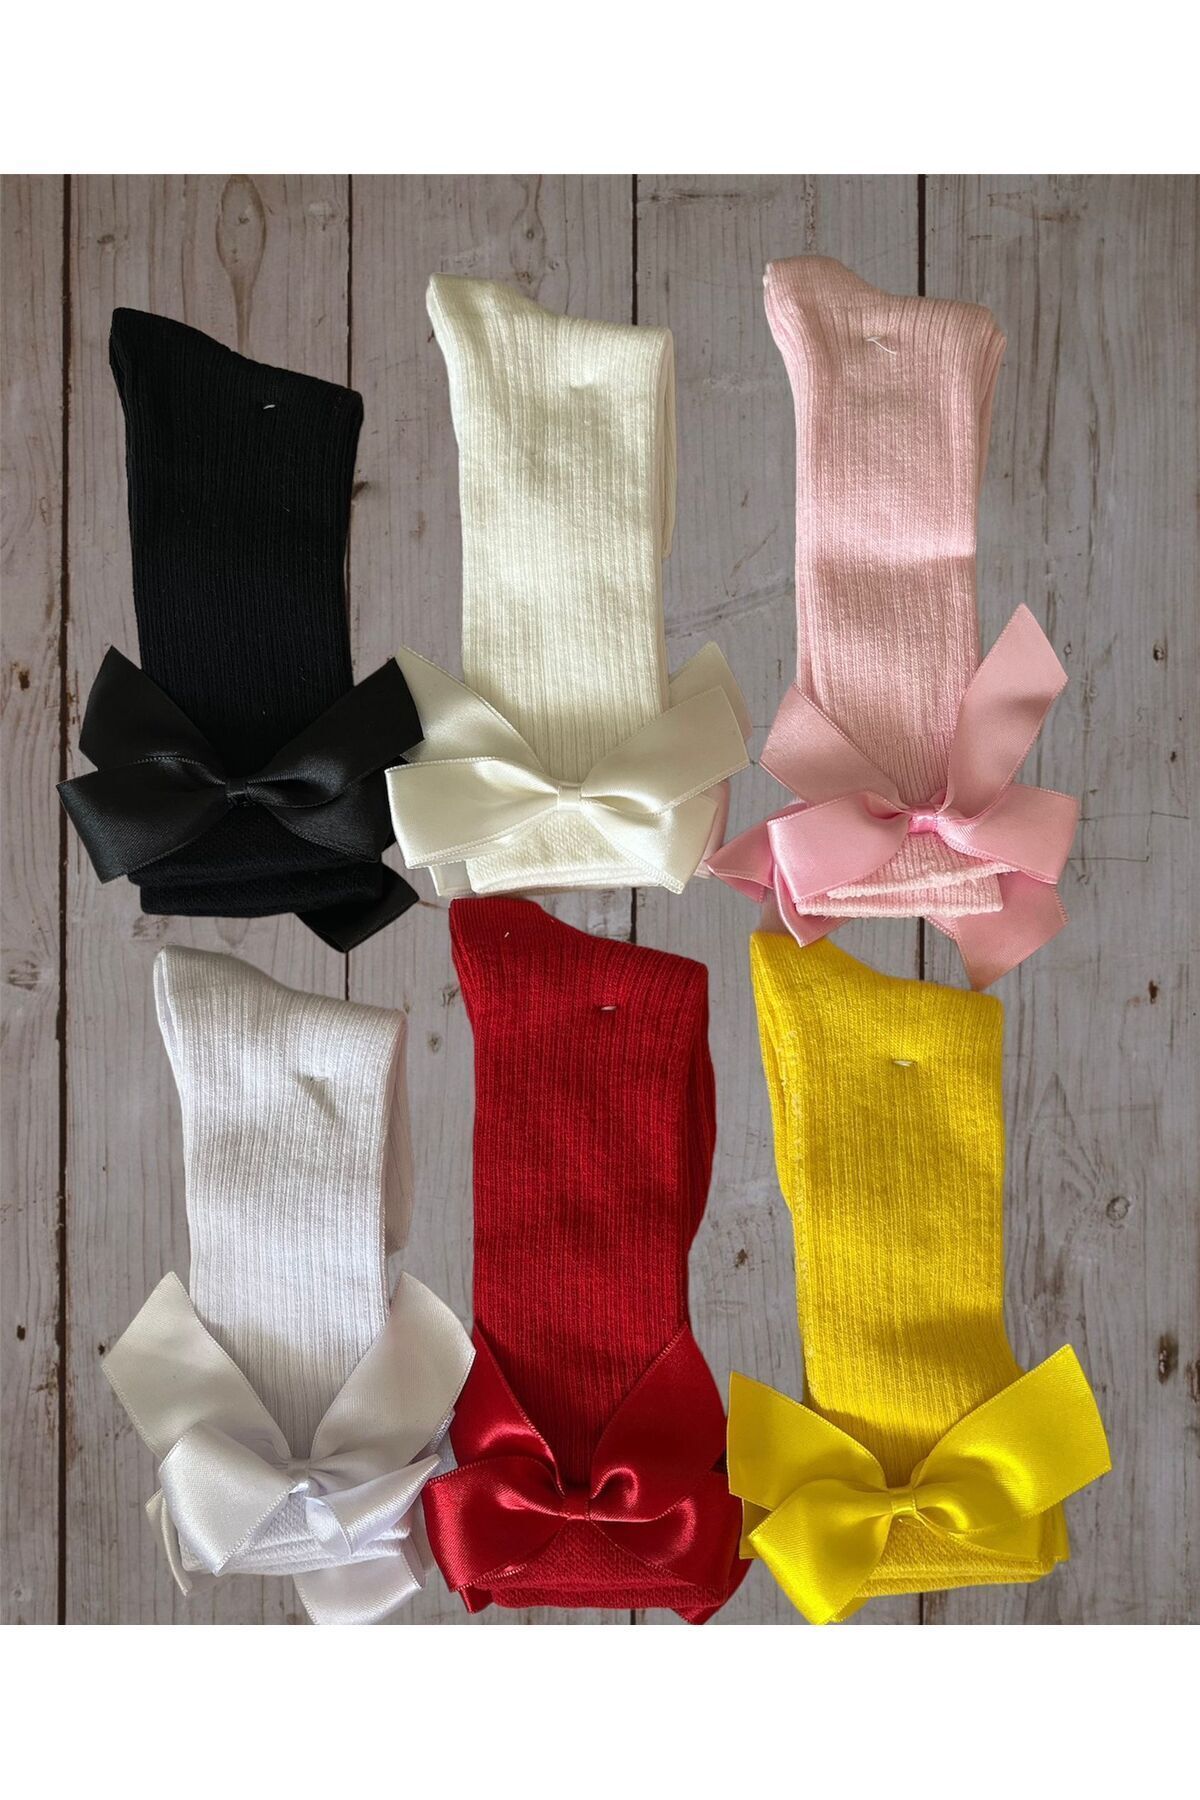 ORAL 6 Çift Dizaltı Renkli Fiyonklu Pamuklu Parfümlü Kız Çocuk Çorabı